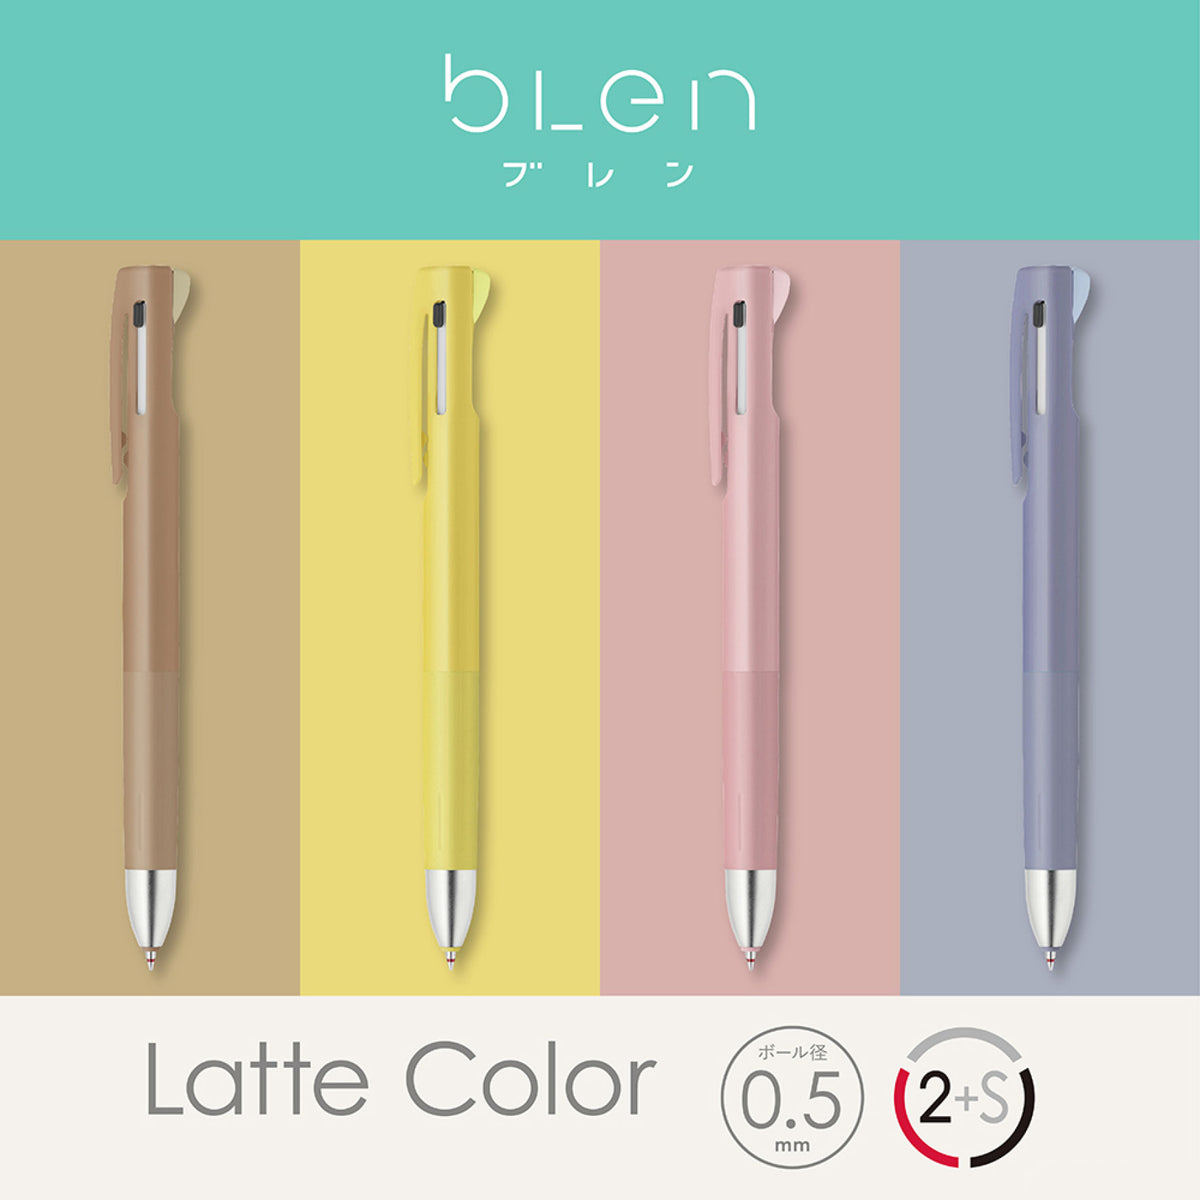 Zebra - Multi Pen - Blen 2·1 - 0.5mm - Latte Color - Blueberry